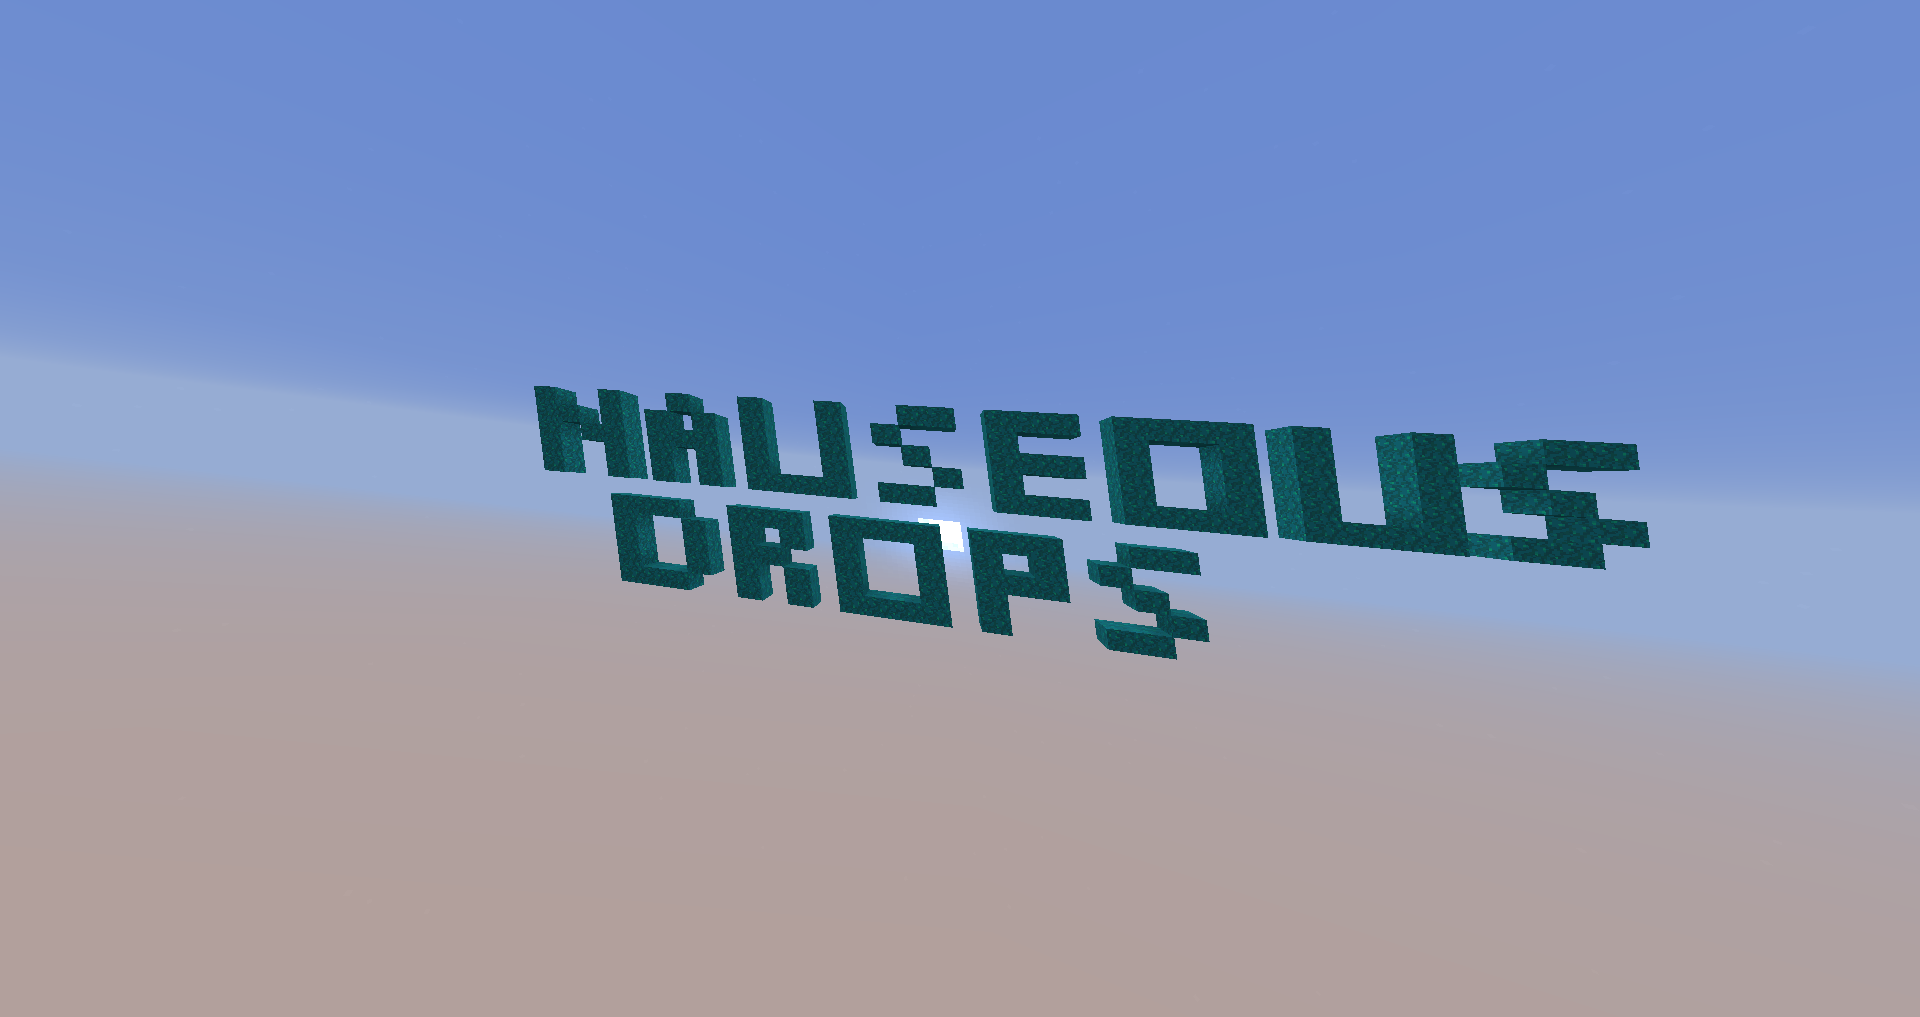 Télécharger Nauseous Droppers pour Minecraft 1.16.4